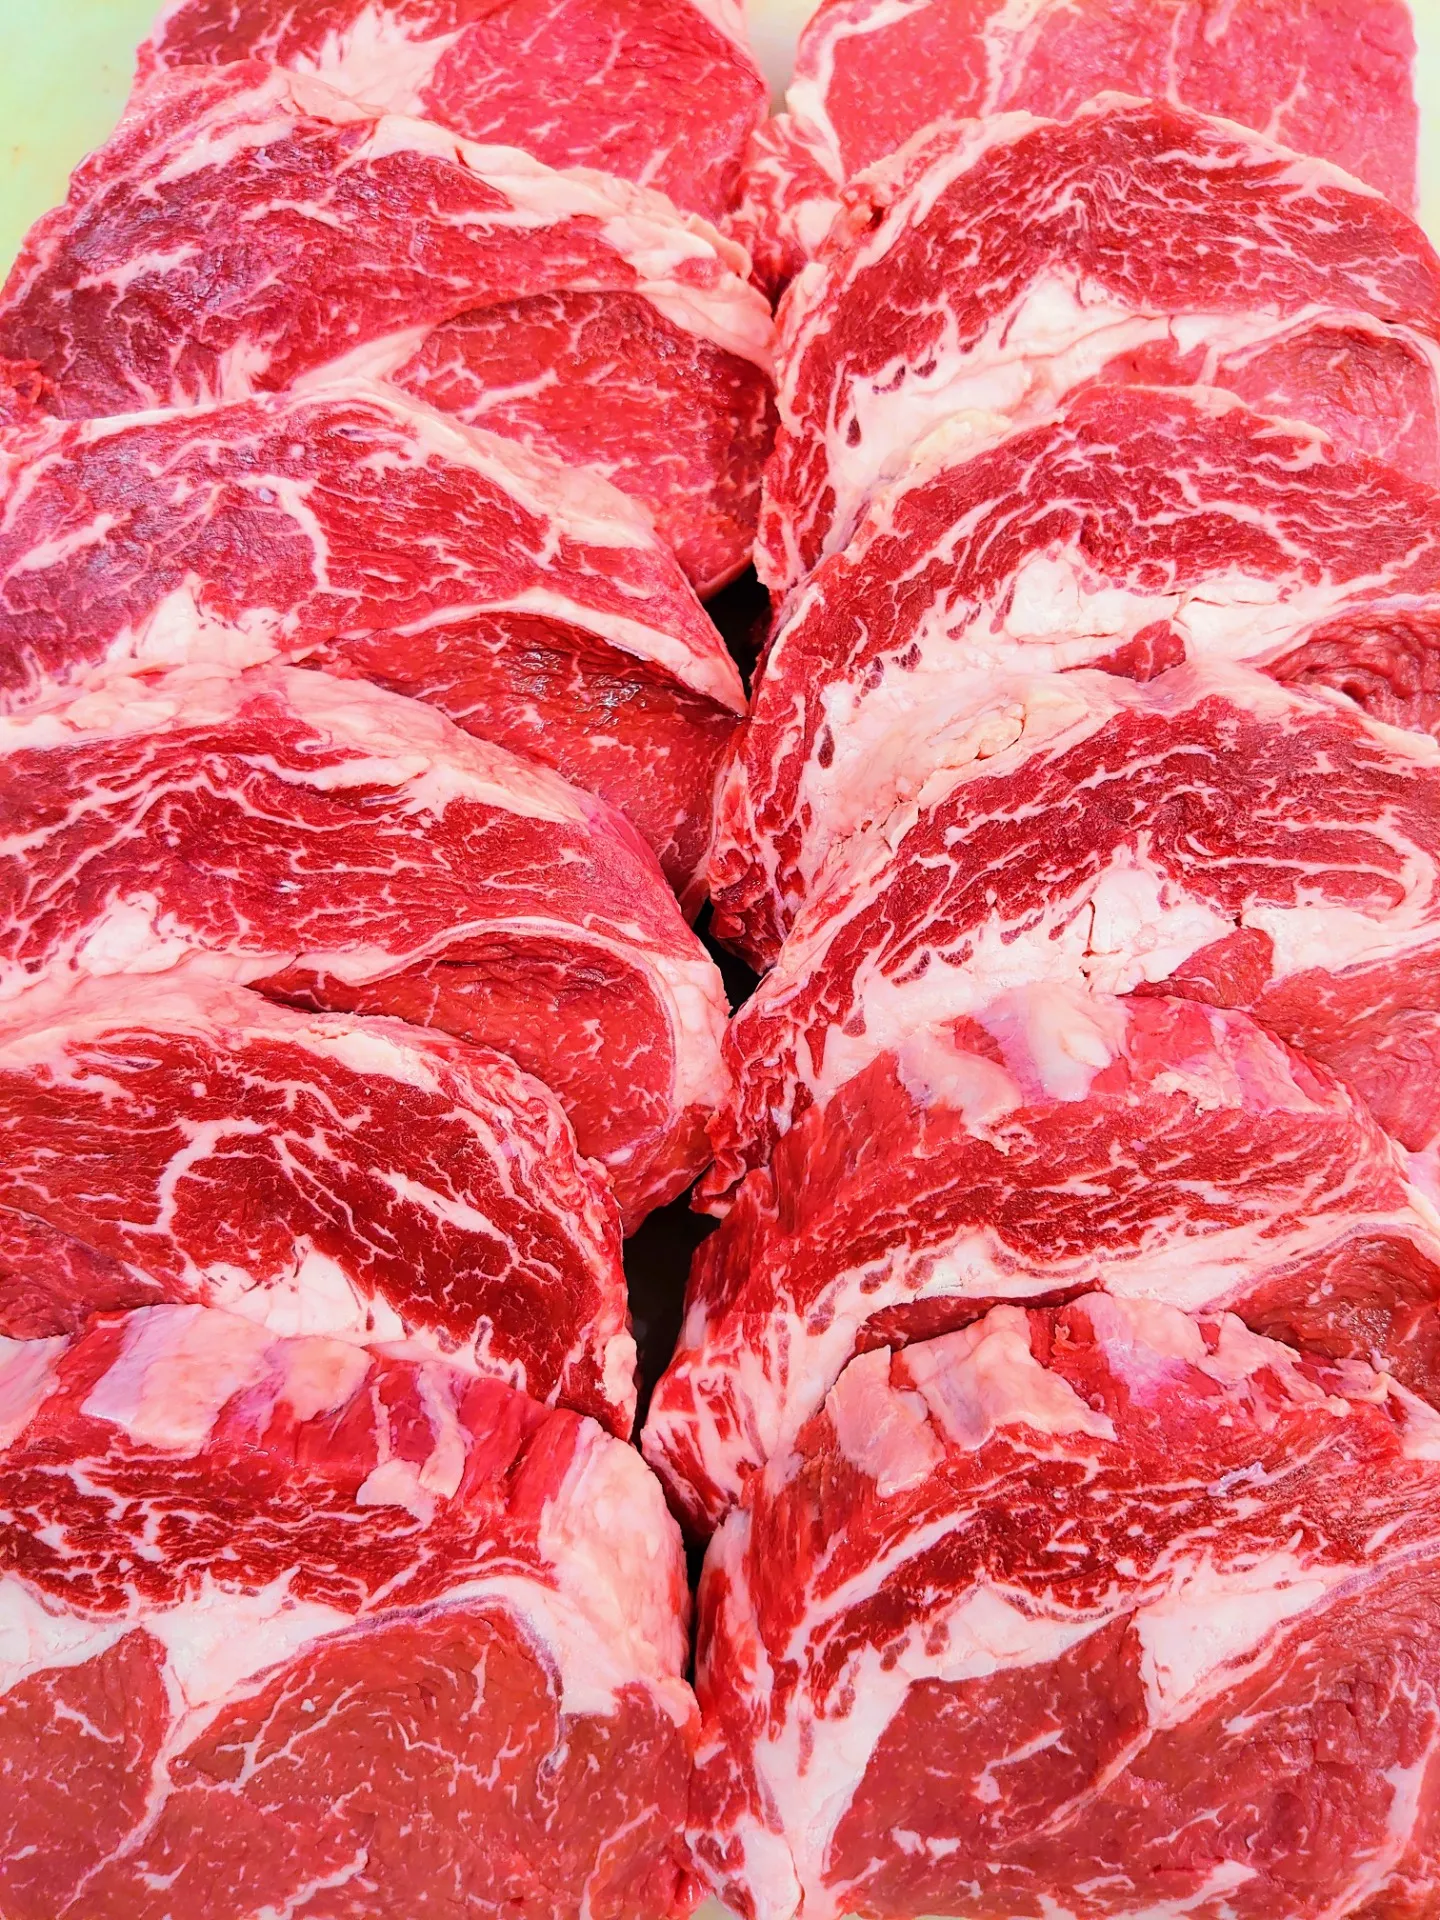 世田谷の輸入牛専門オンライン肉屋で営業中です。